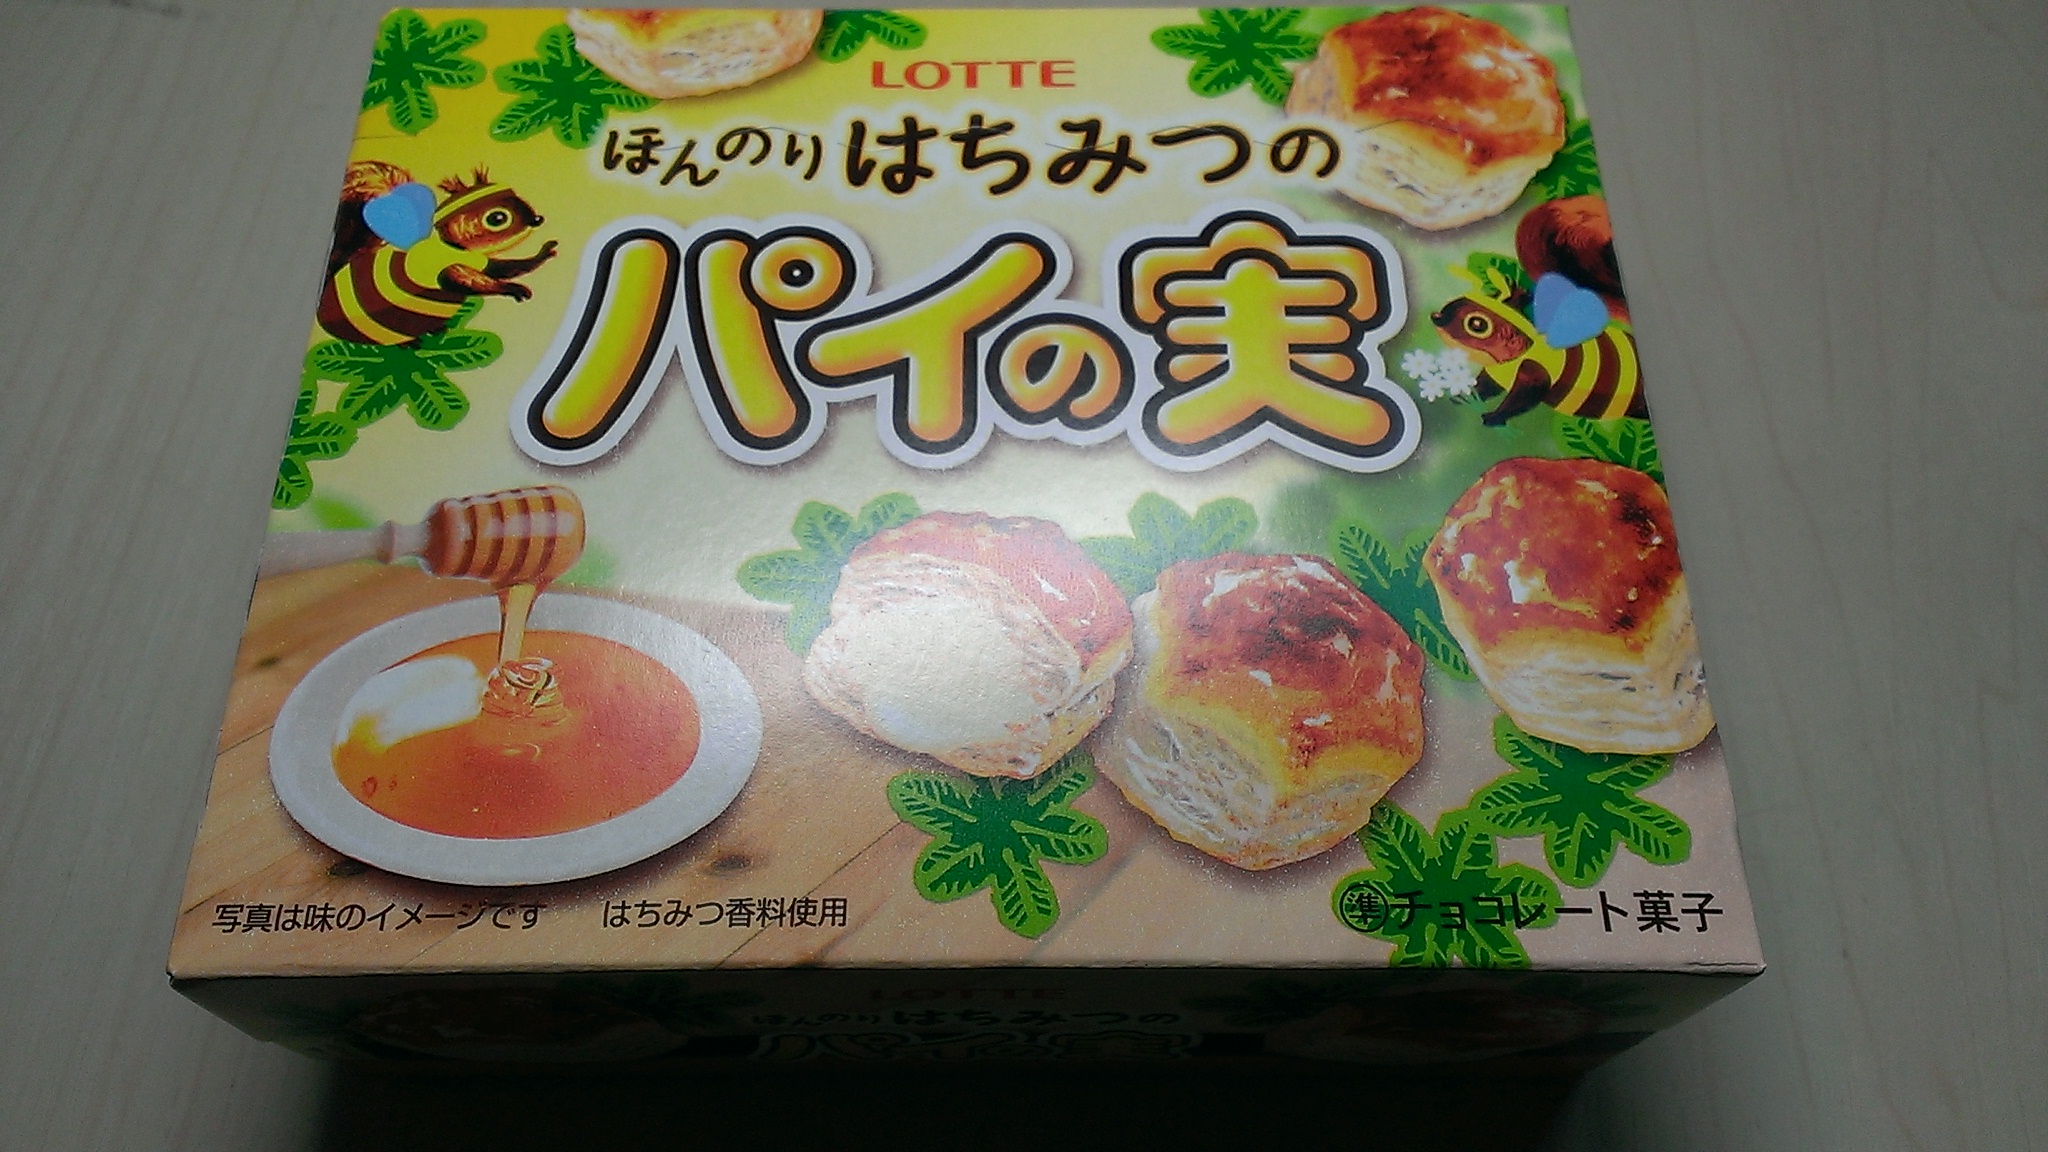 コンビニ スーパーの新作お菓子 アイスの体験レポート Lotteの代表作パイの実です